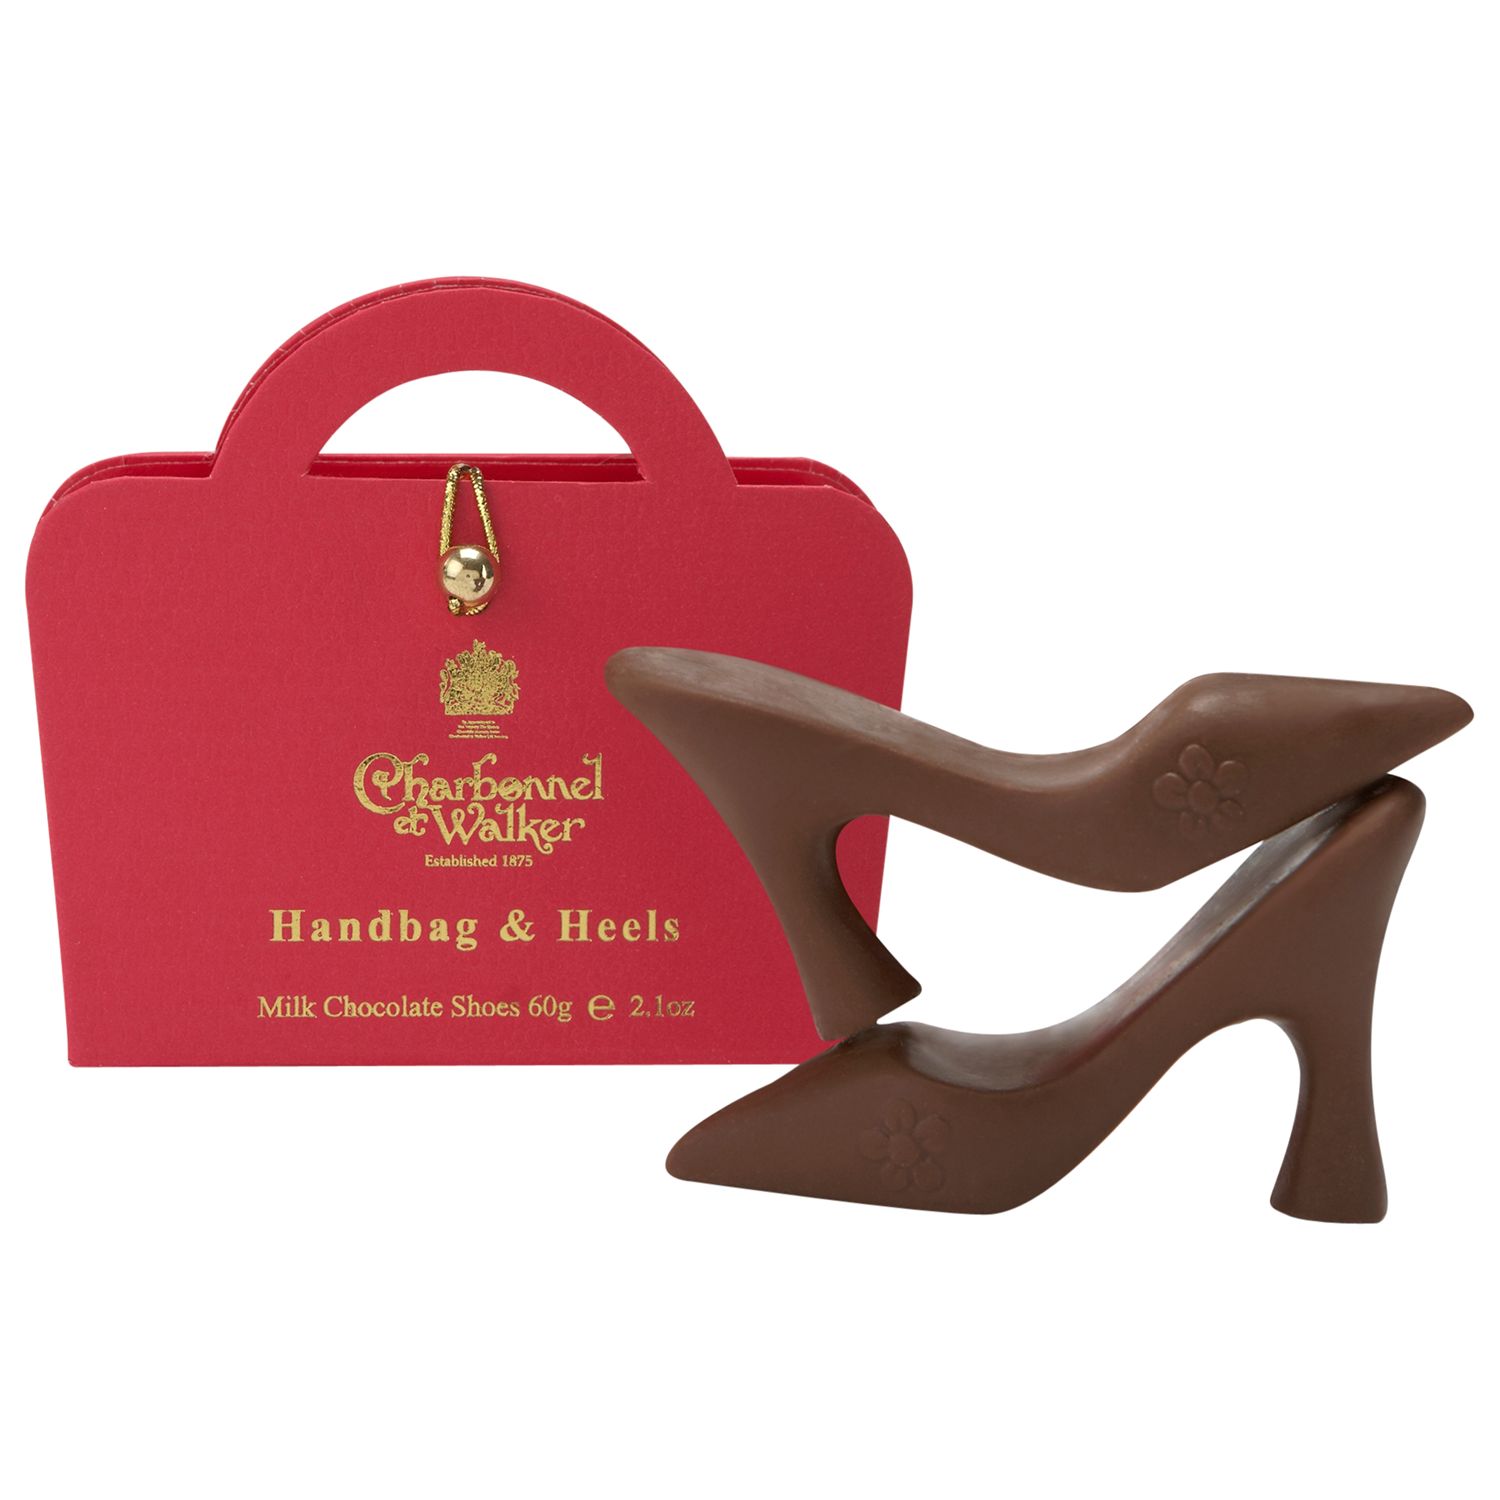 Charbonnel et Walker Milk Chocolate Handbag & Heels Set, 60g, Pink